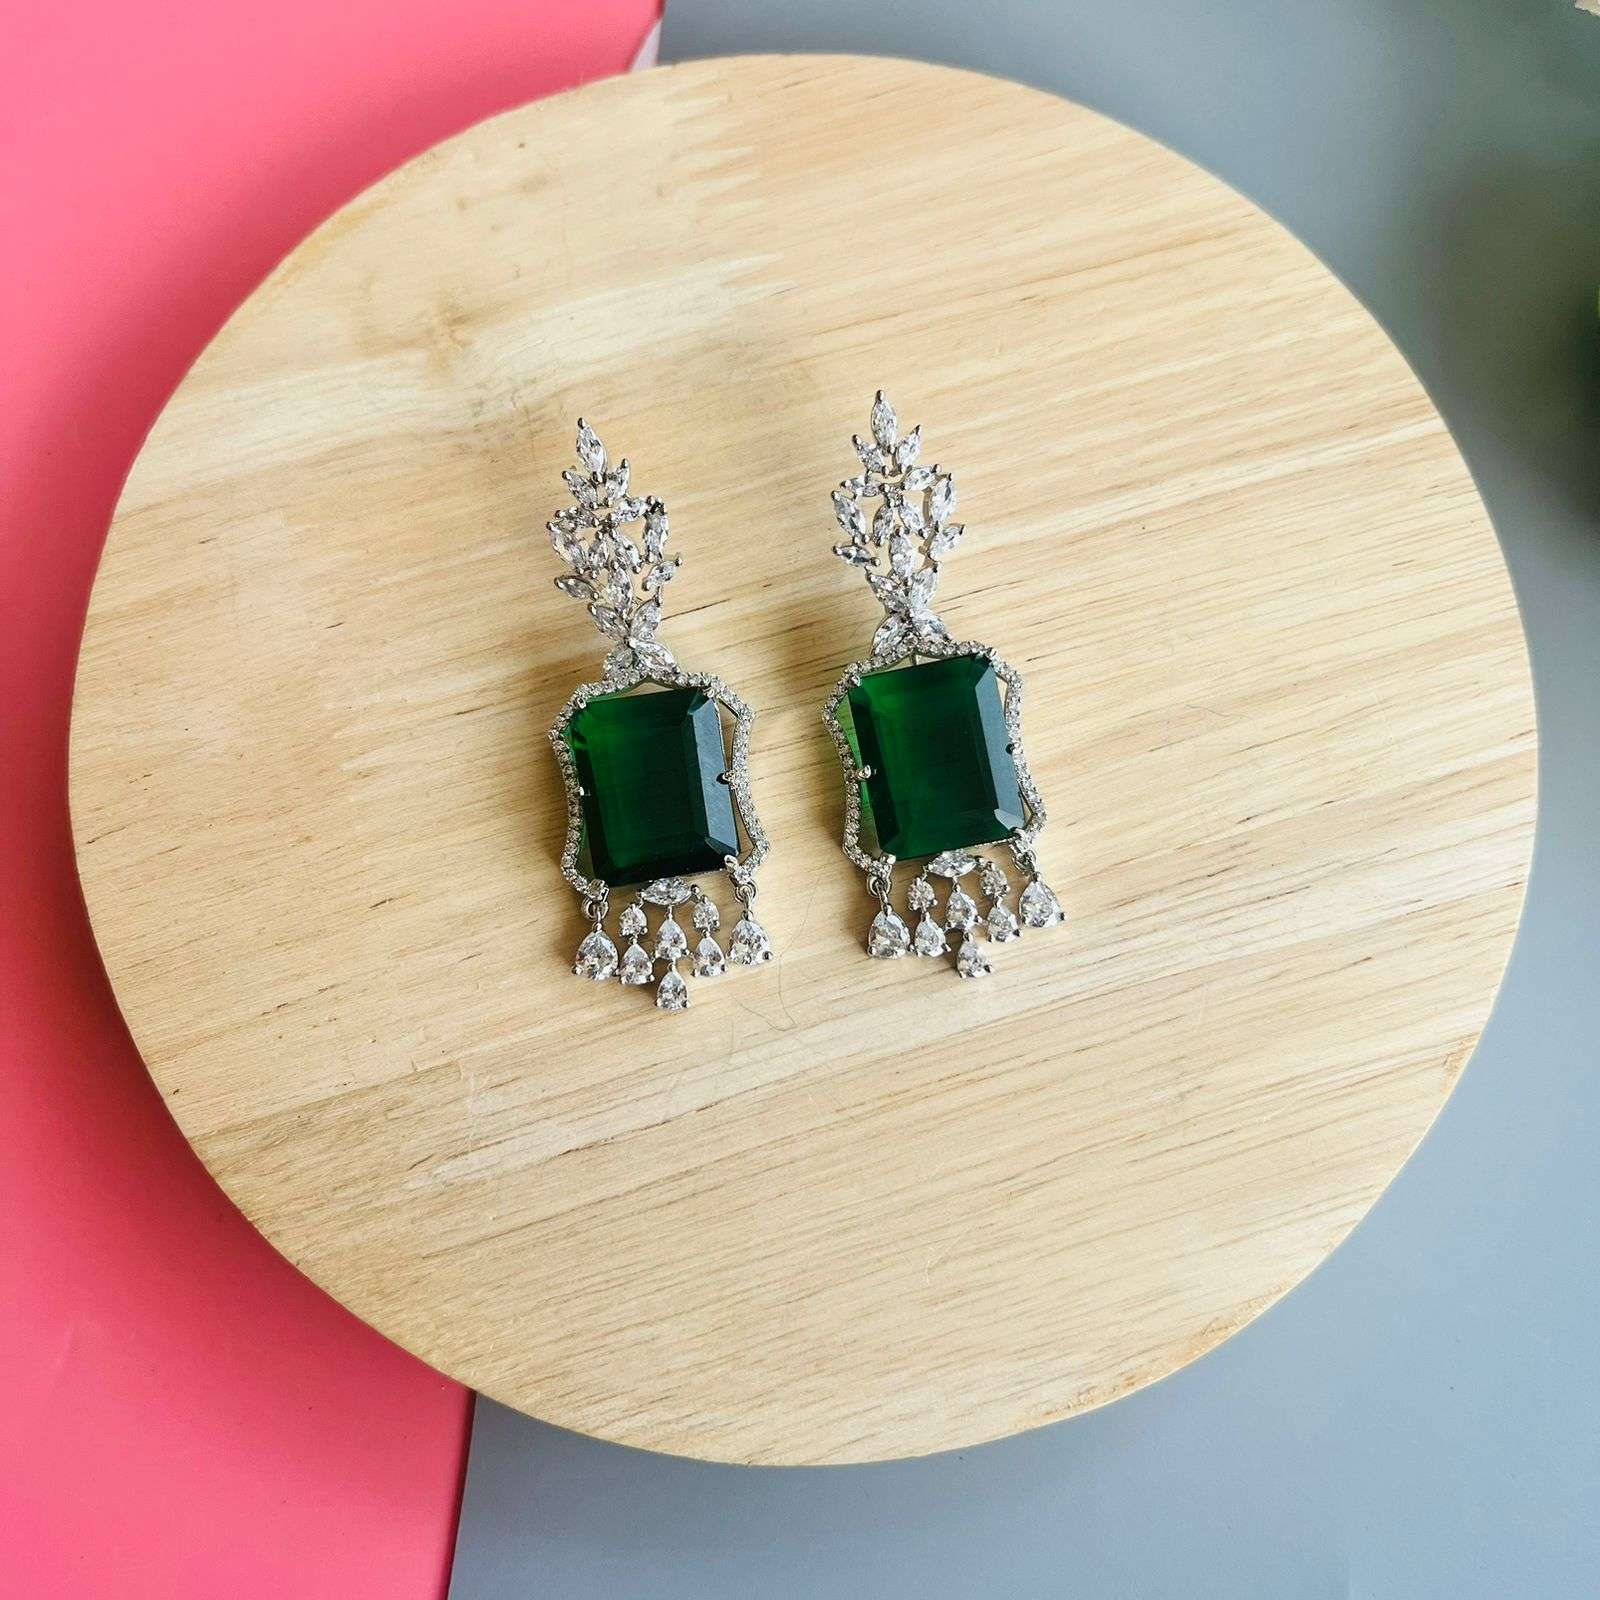 Ad Mahira earrings